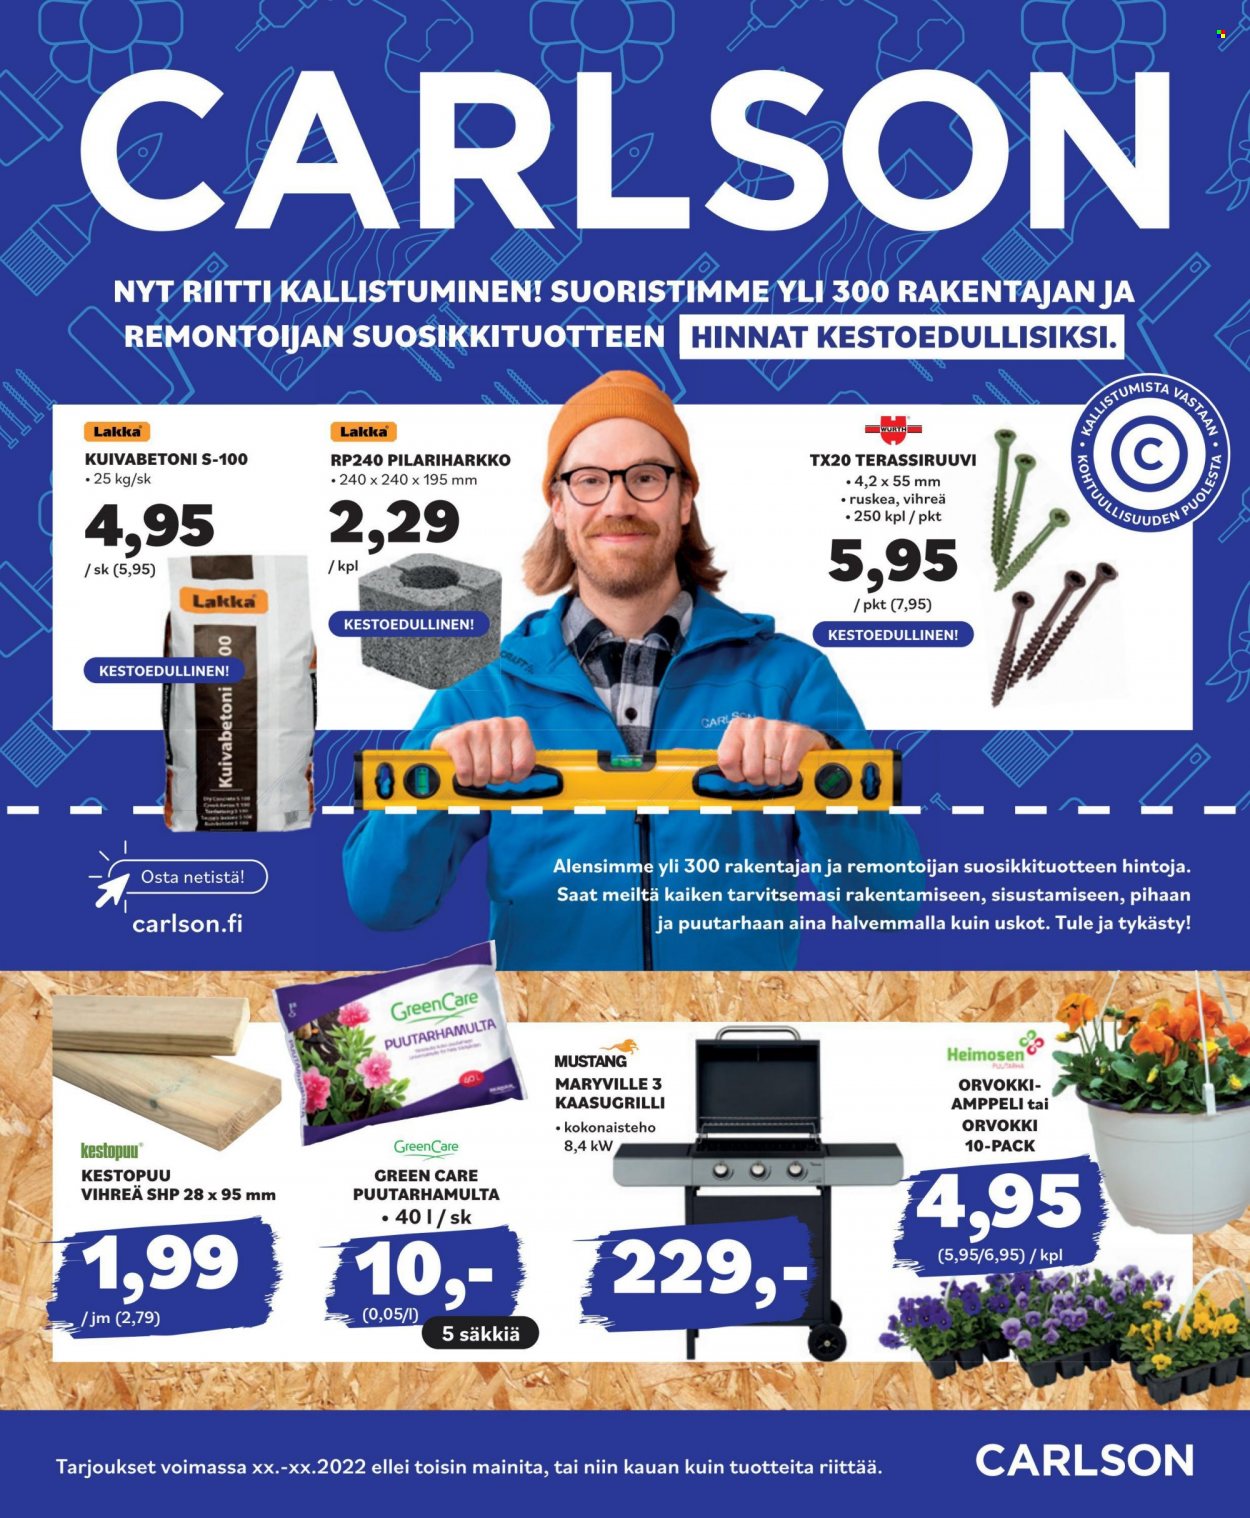 thumbnail - Carlson tarjoukset  - Tarjoustuotteet - Craft, kuivabetoni, grilli, kaasugrilli, puutarhamulta, ty. Sivu 1.